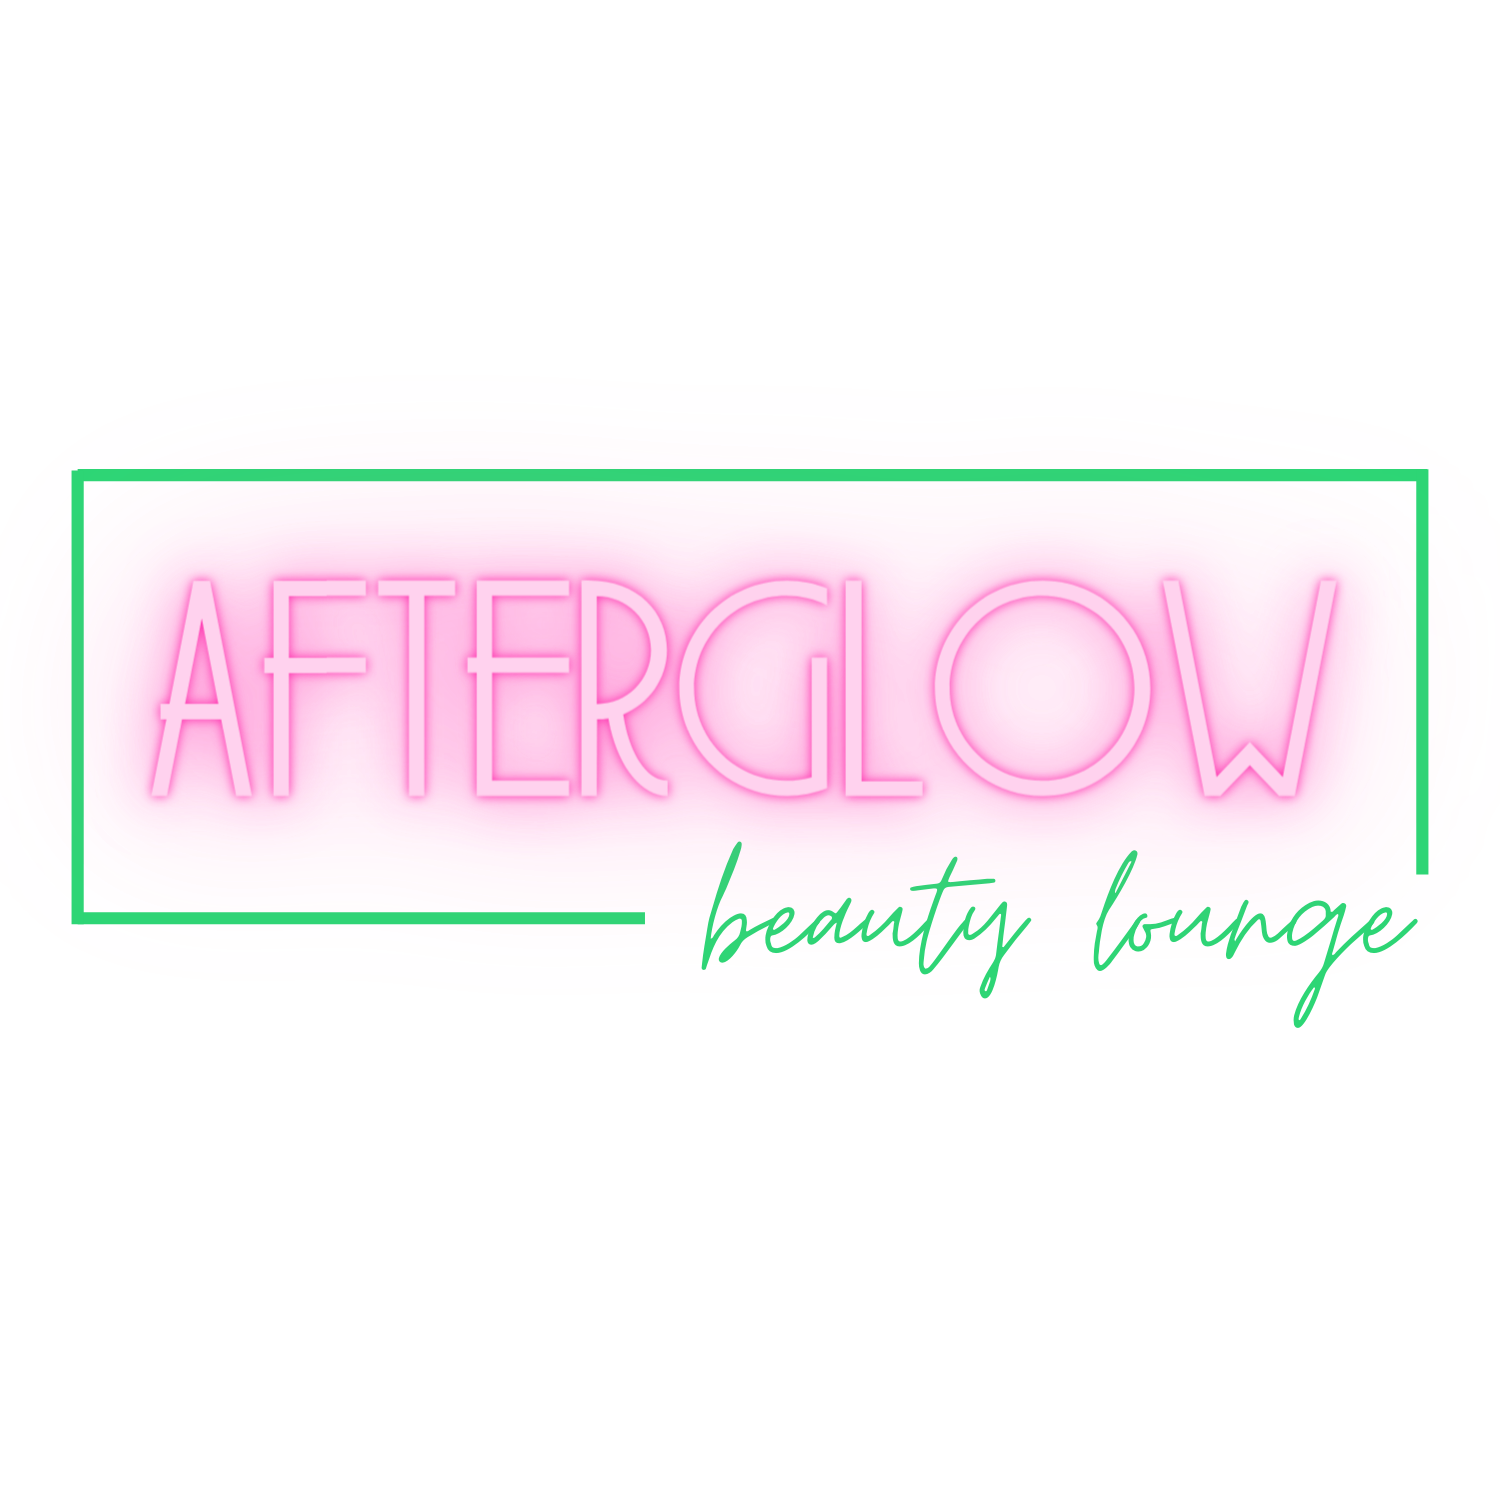 Afterglow Beauty Lounge